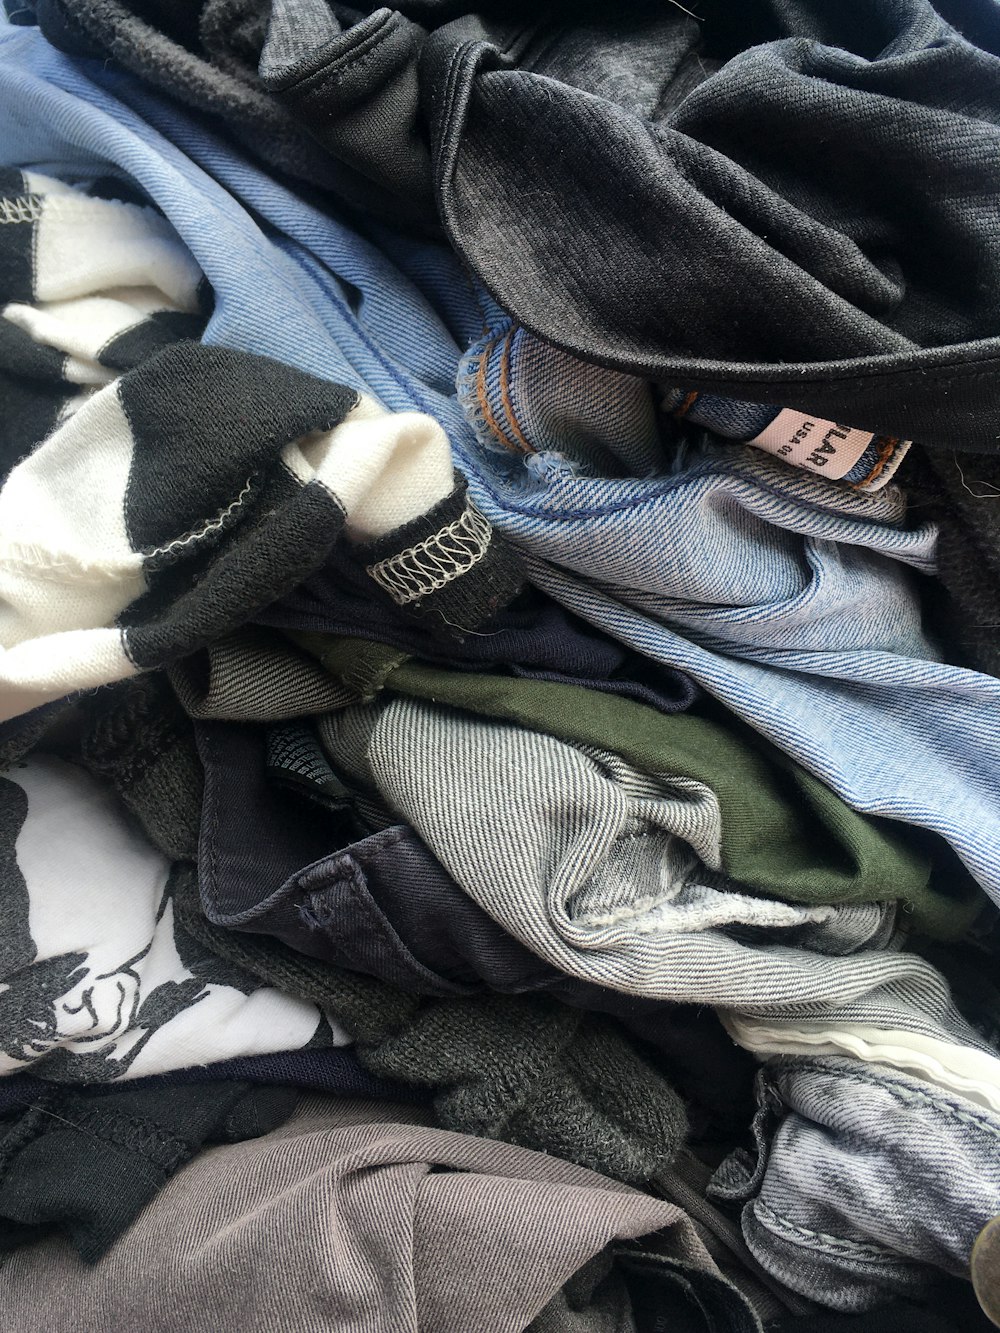 Πώς βγάζω τα χνούδια από τα ρούχα: Υπάρχουν λύσεις! | Alphafreepress.gr